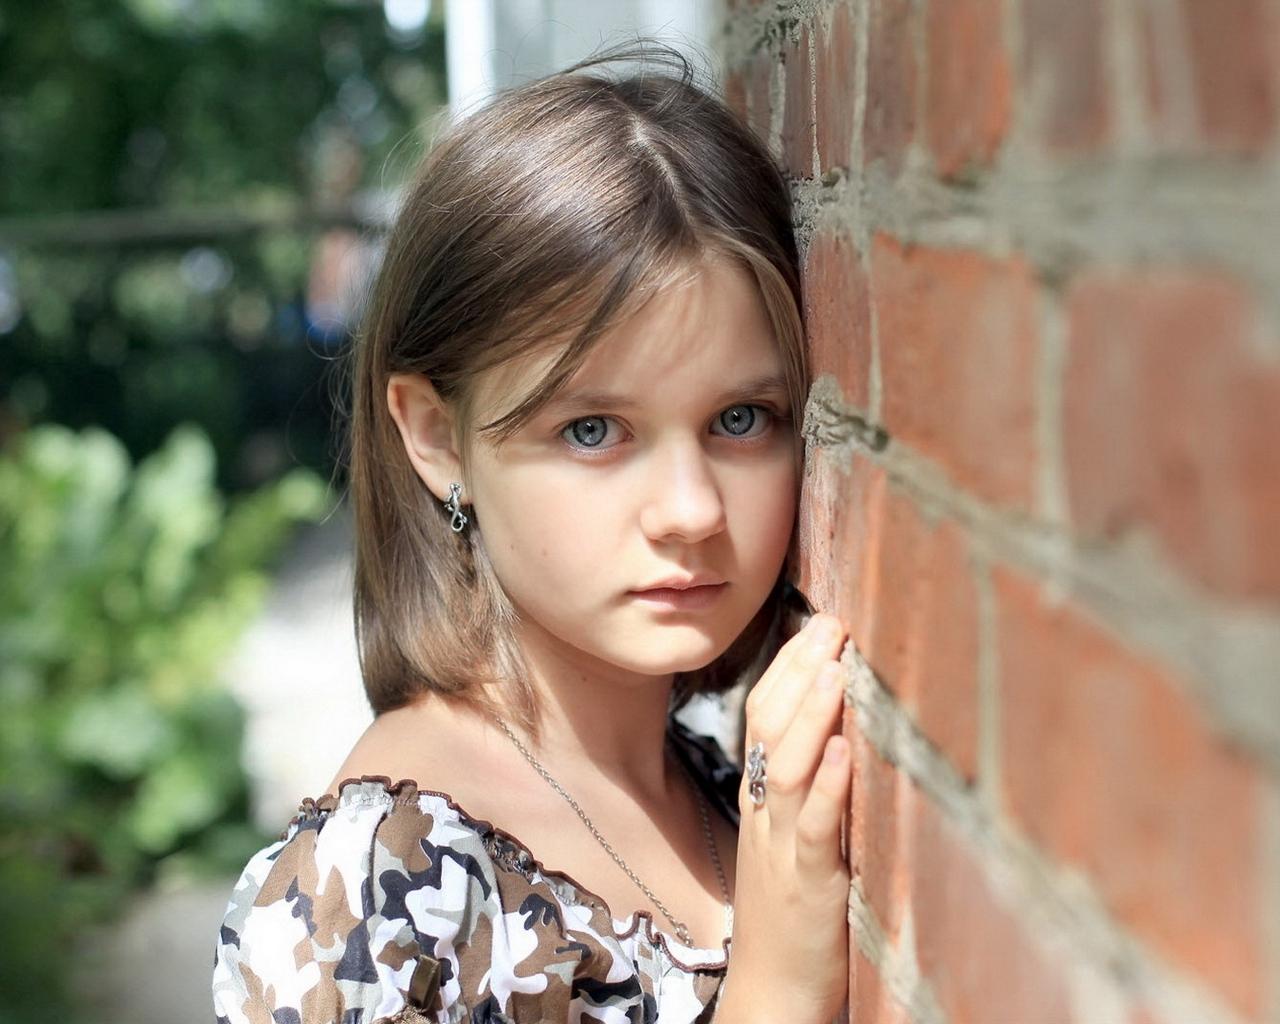 Download wallpaper 1280x1024 child, girl, sad, wall standard 5:4 HD